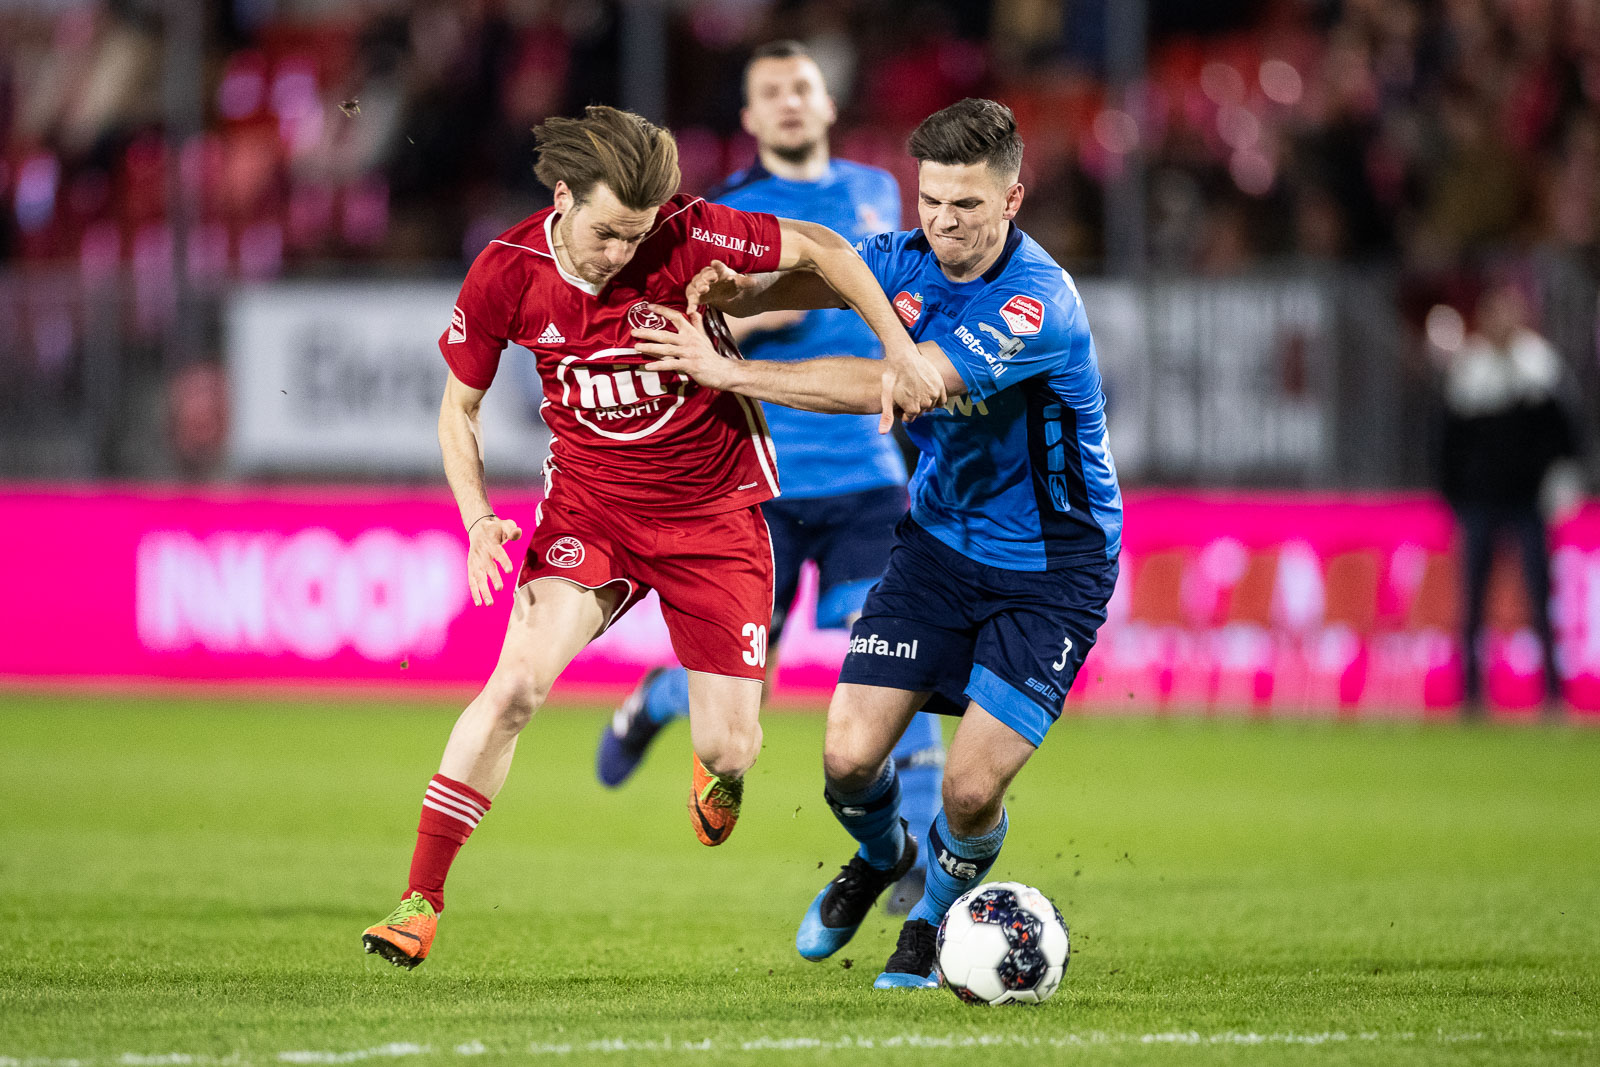 Almere City FC contracteert Bart Meijers